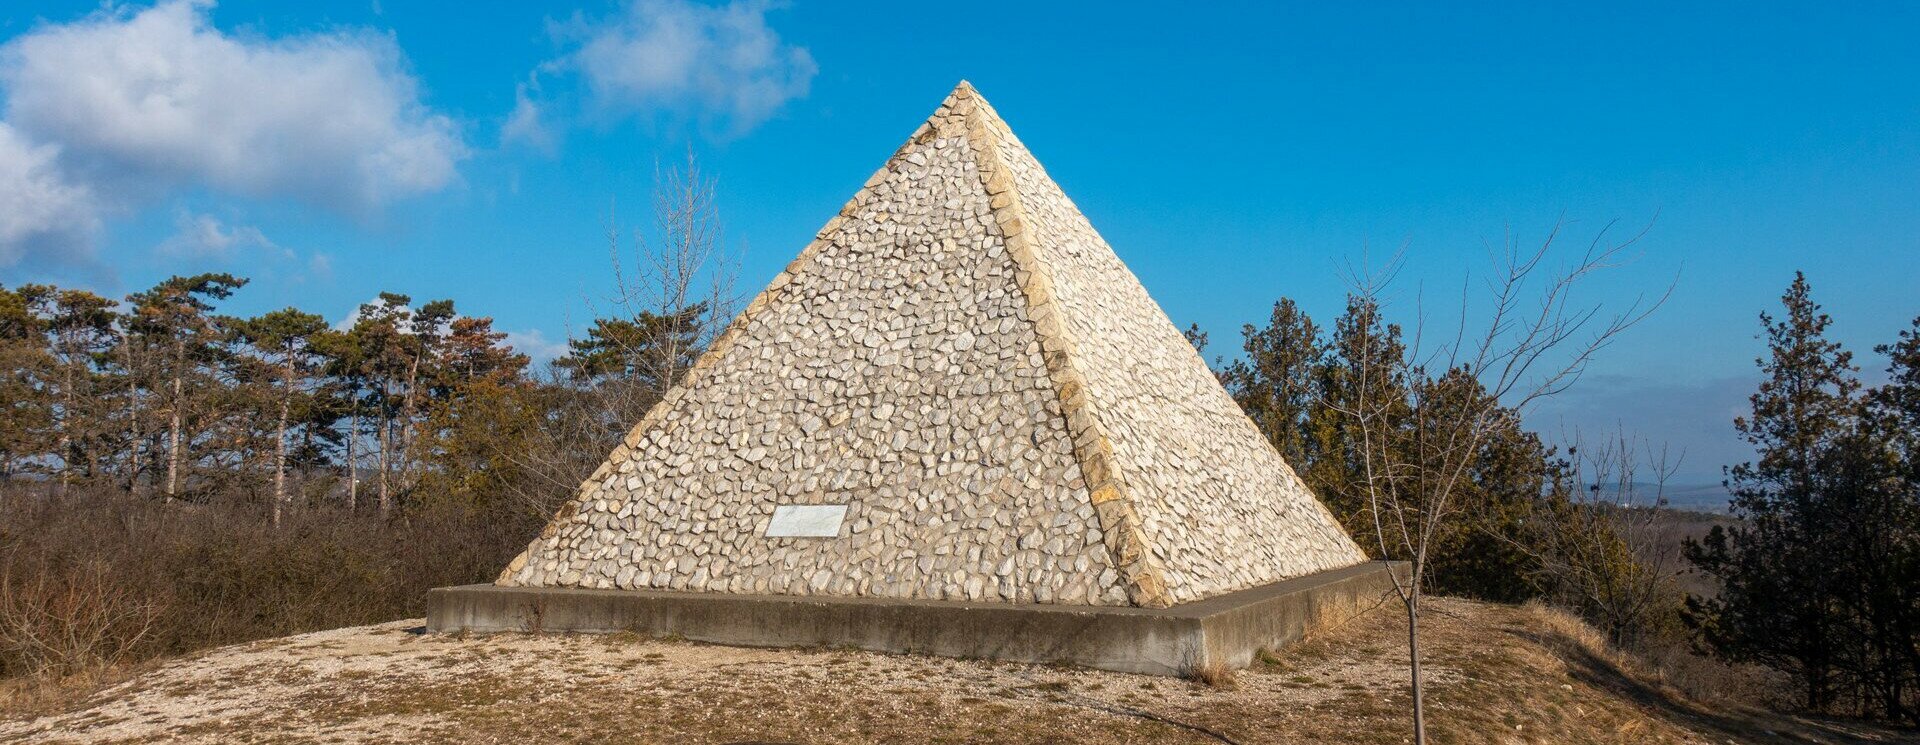 Kirándulás a magyar piramishoz, avagy kastélytúra extrákkal